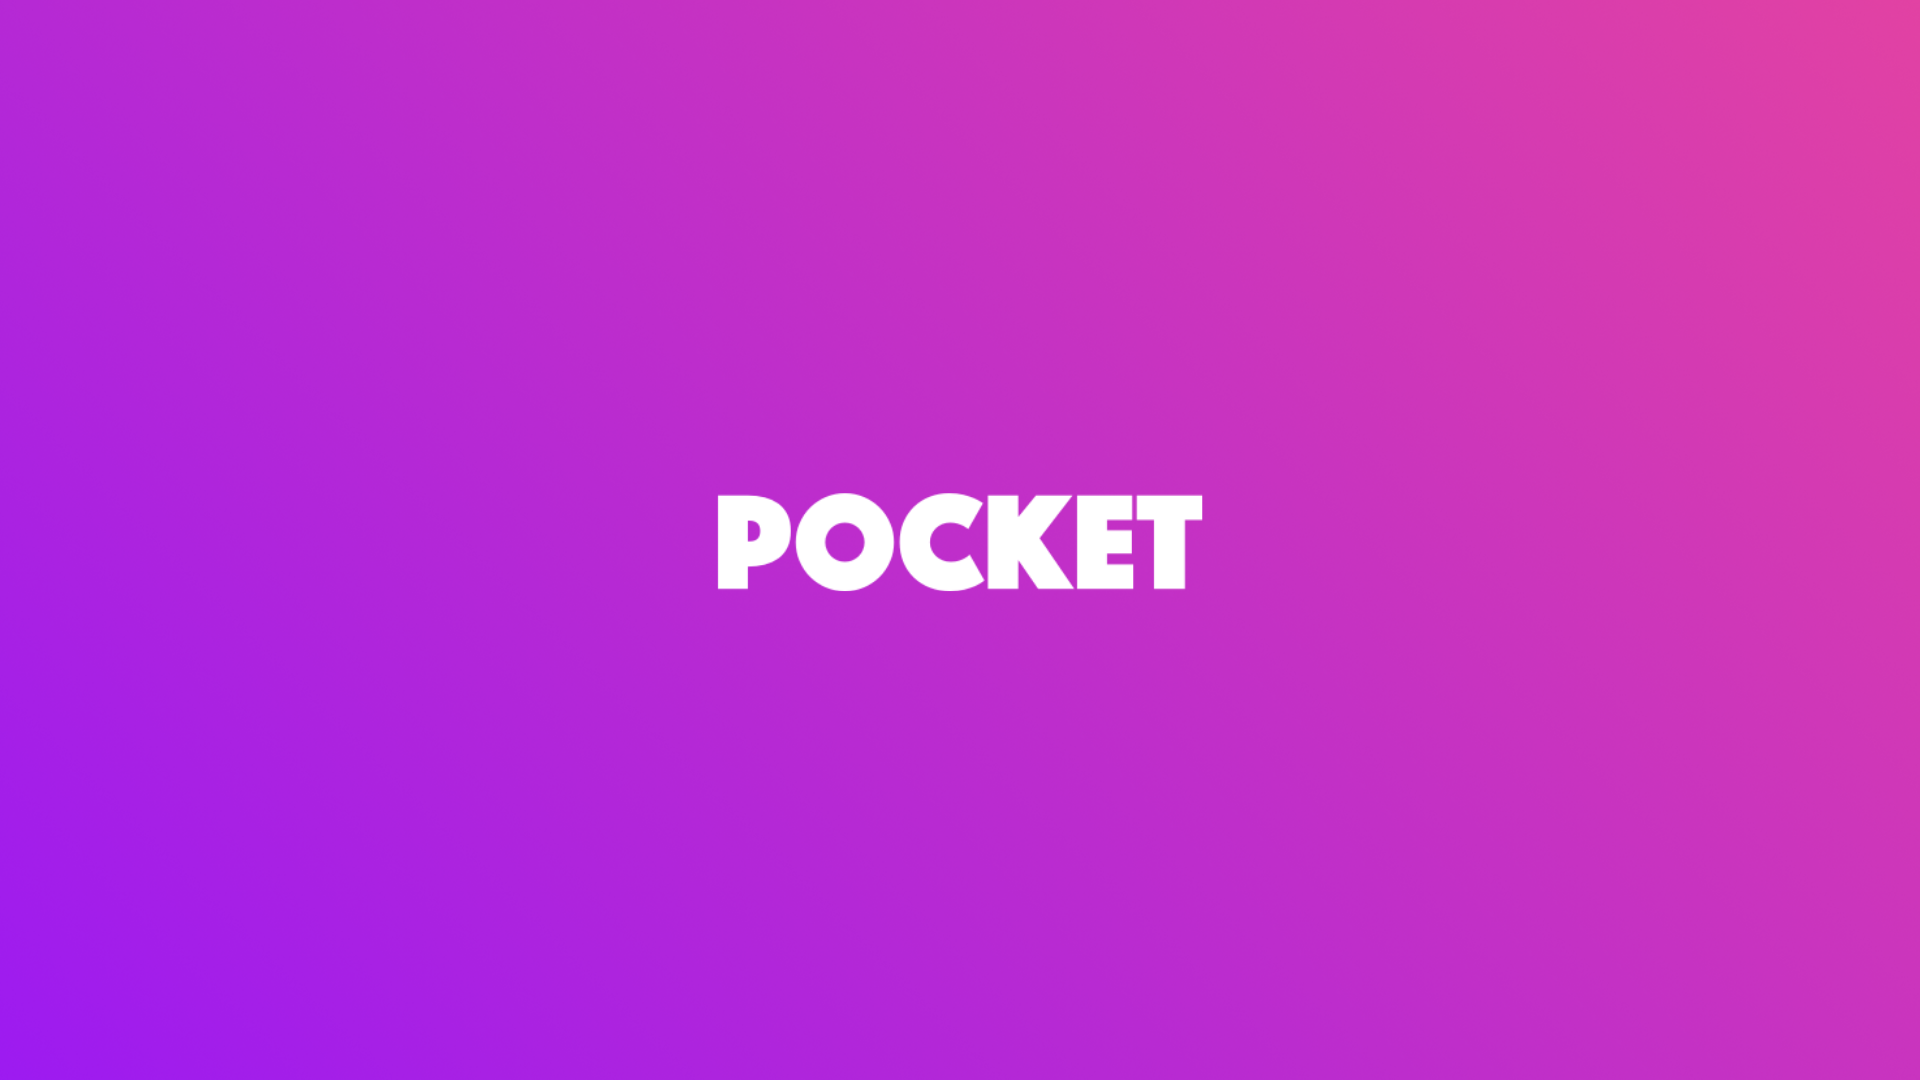 The text POCKET, the logo of Pocket Bitcoin